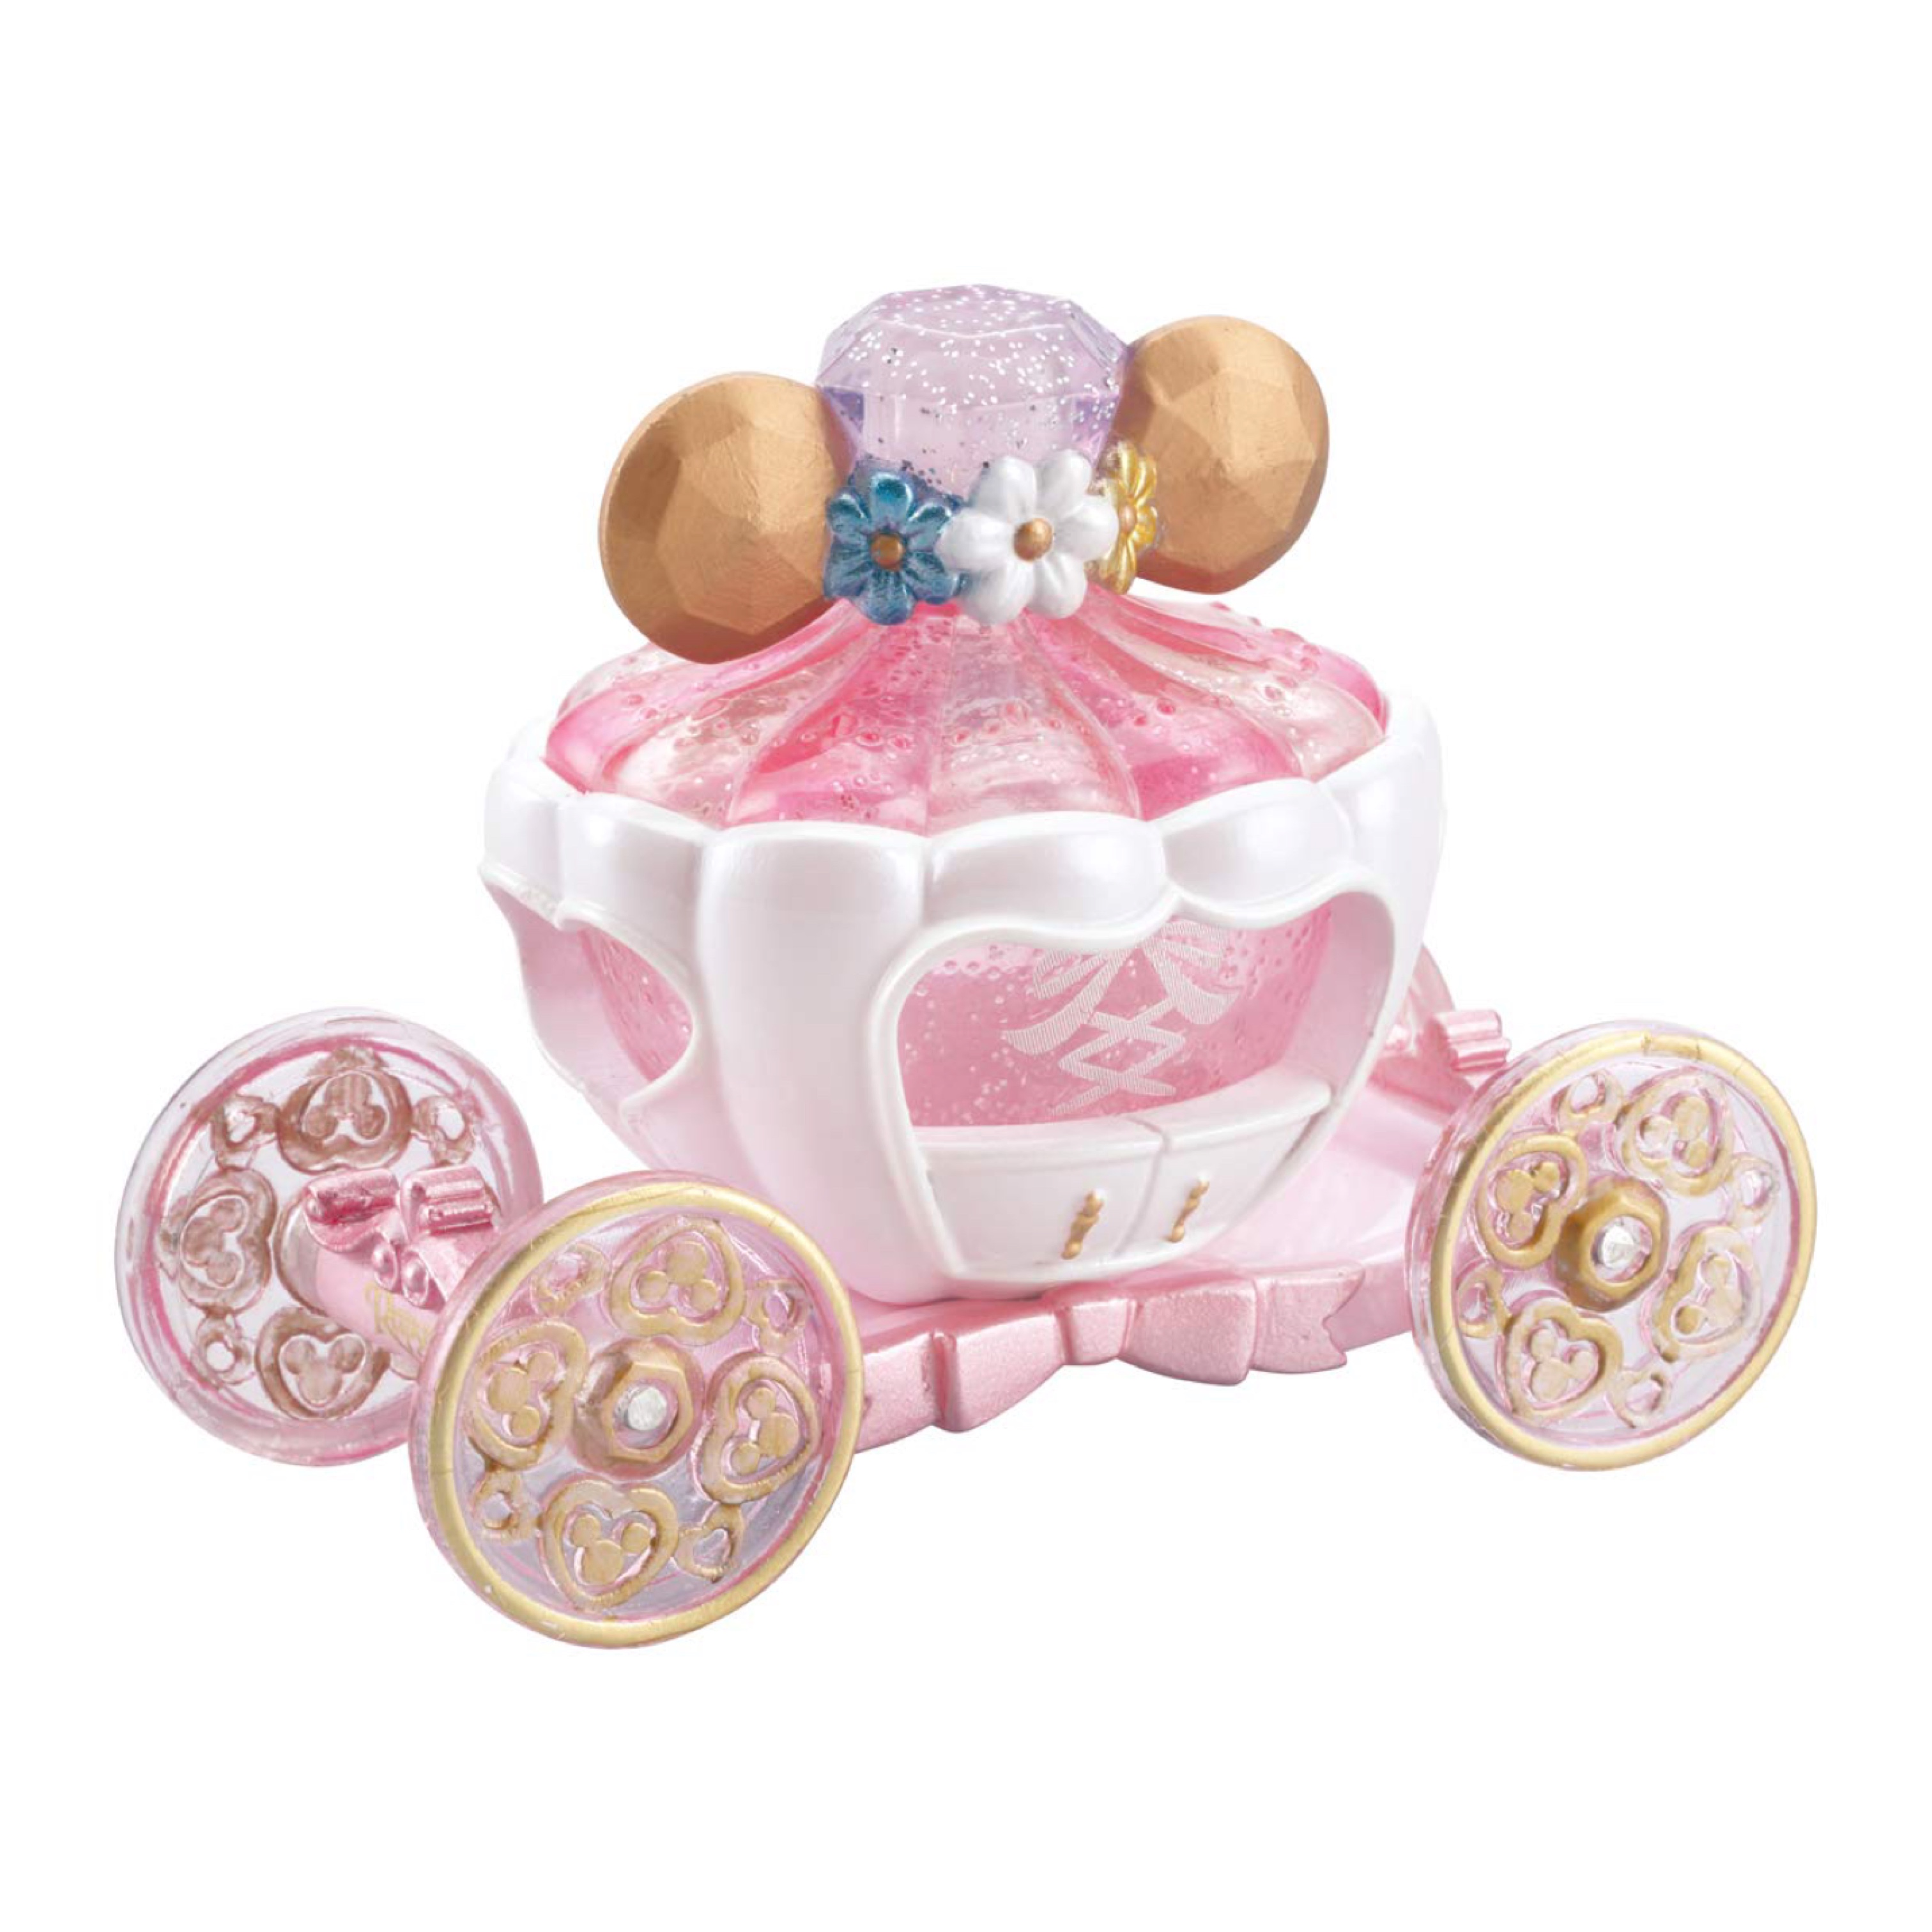 现货  日本Disney迪士尼Rapunzel长发公主TAKARA TOMY收藏玩具车